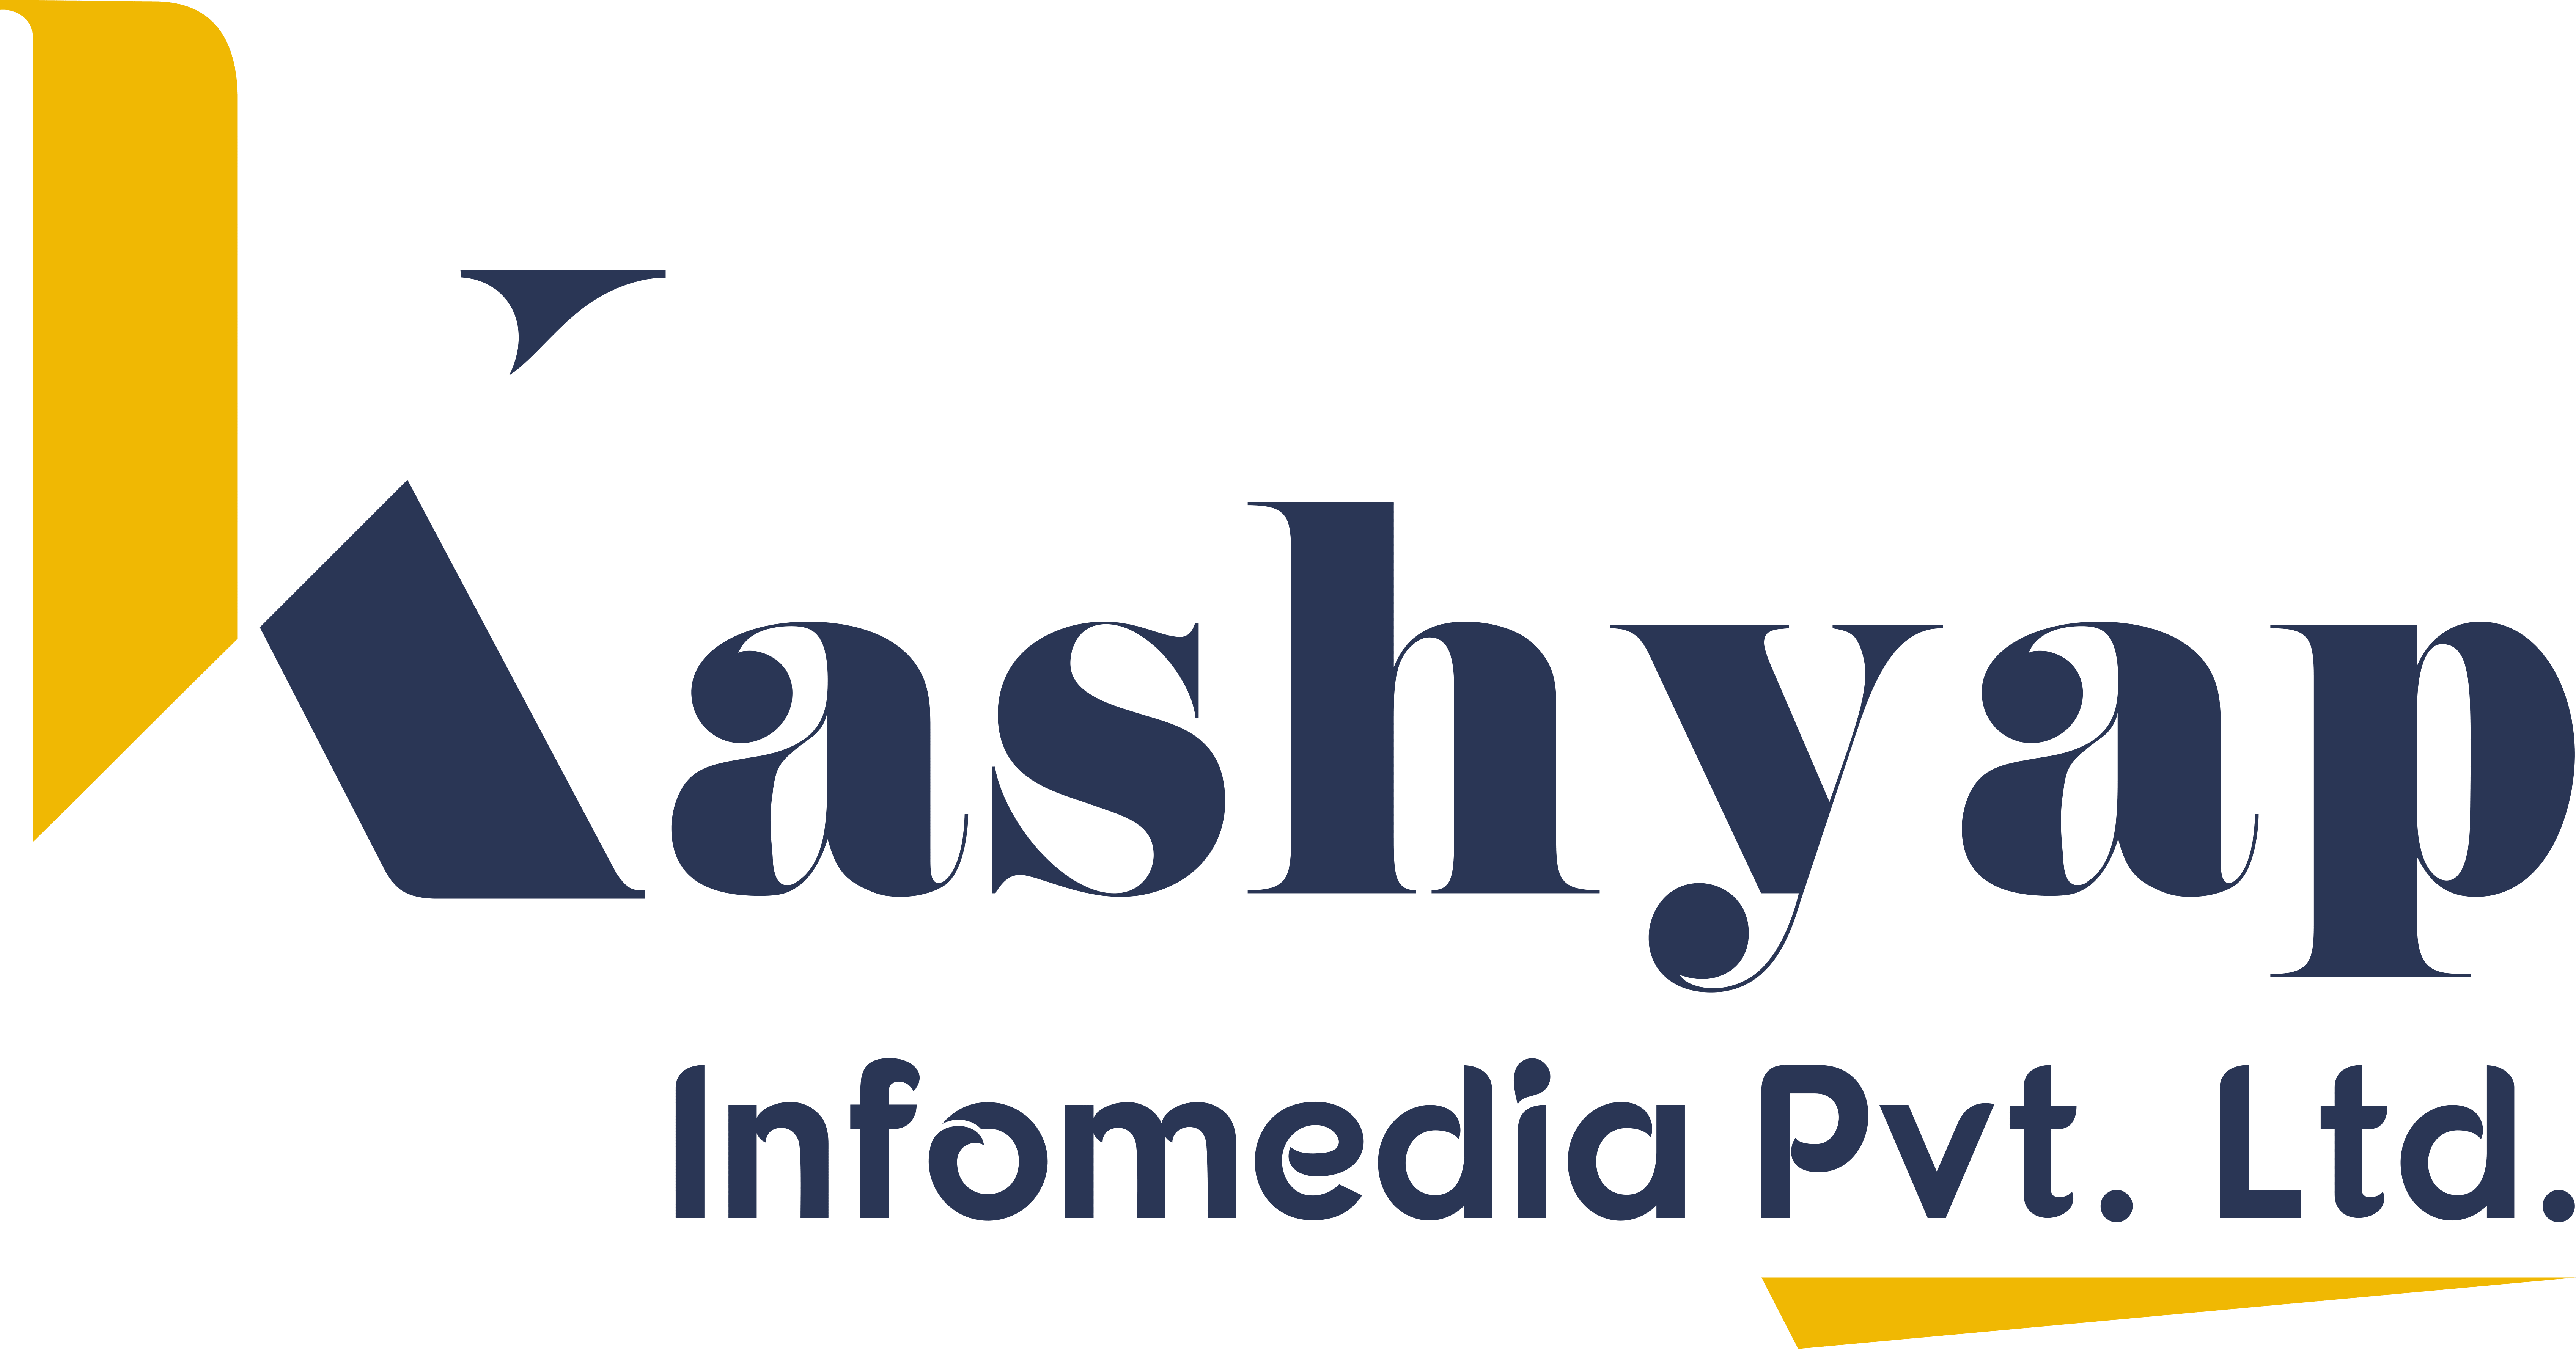 Kashayp Infomedia Pvt. Ltd. Logo